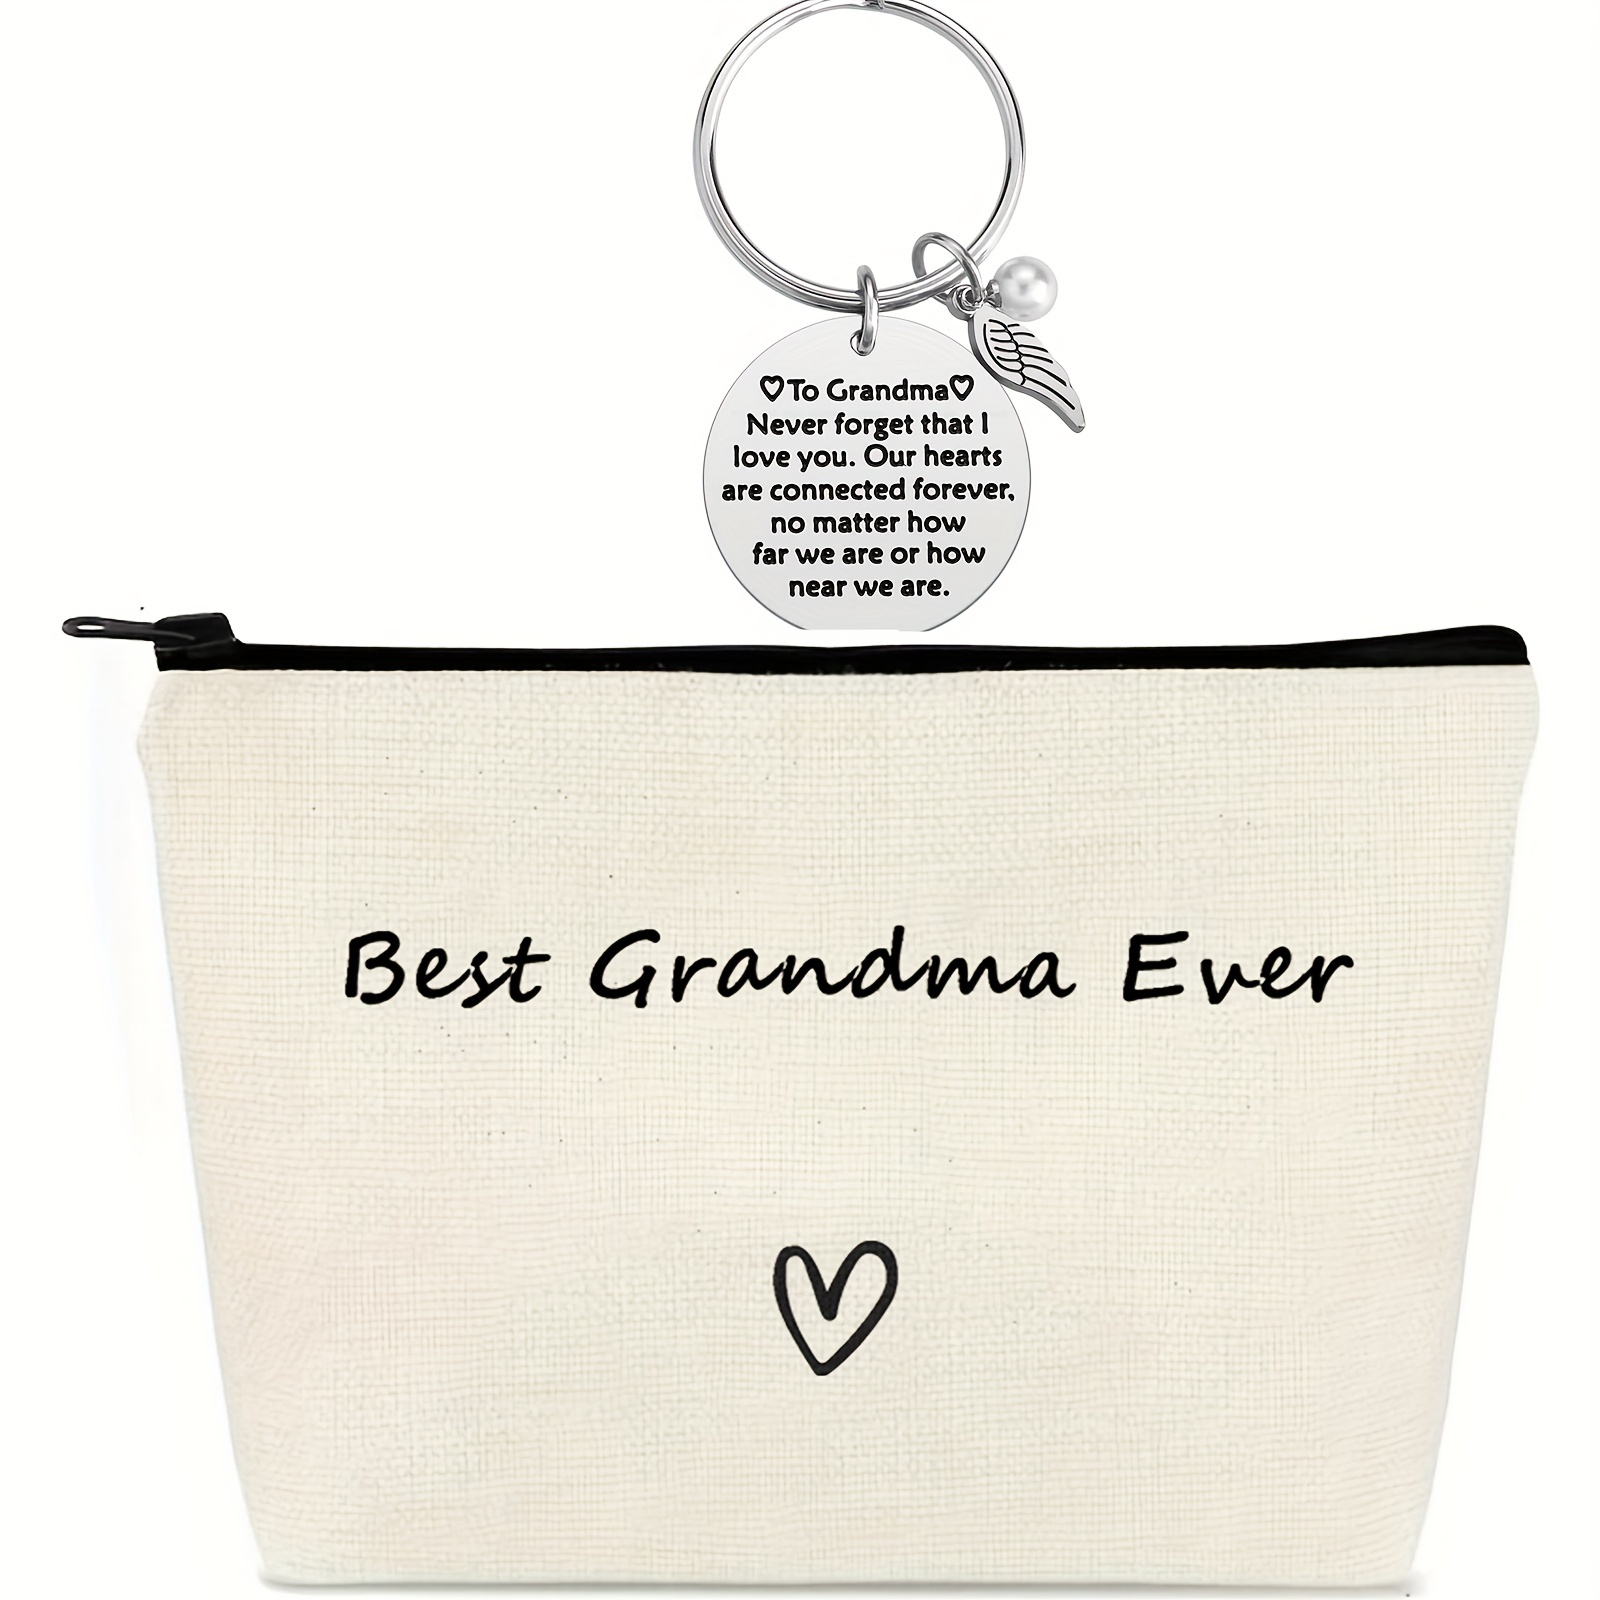 Regalos para abuela, ideas de regalo para abuela, regalos para abuela,  regalos de cumpleaños para abuela, nana de nieta, nietos, regalos para  abuela